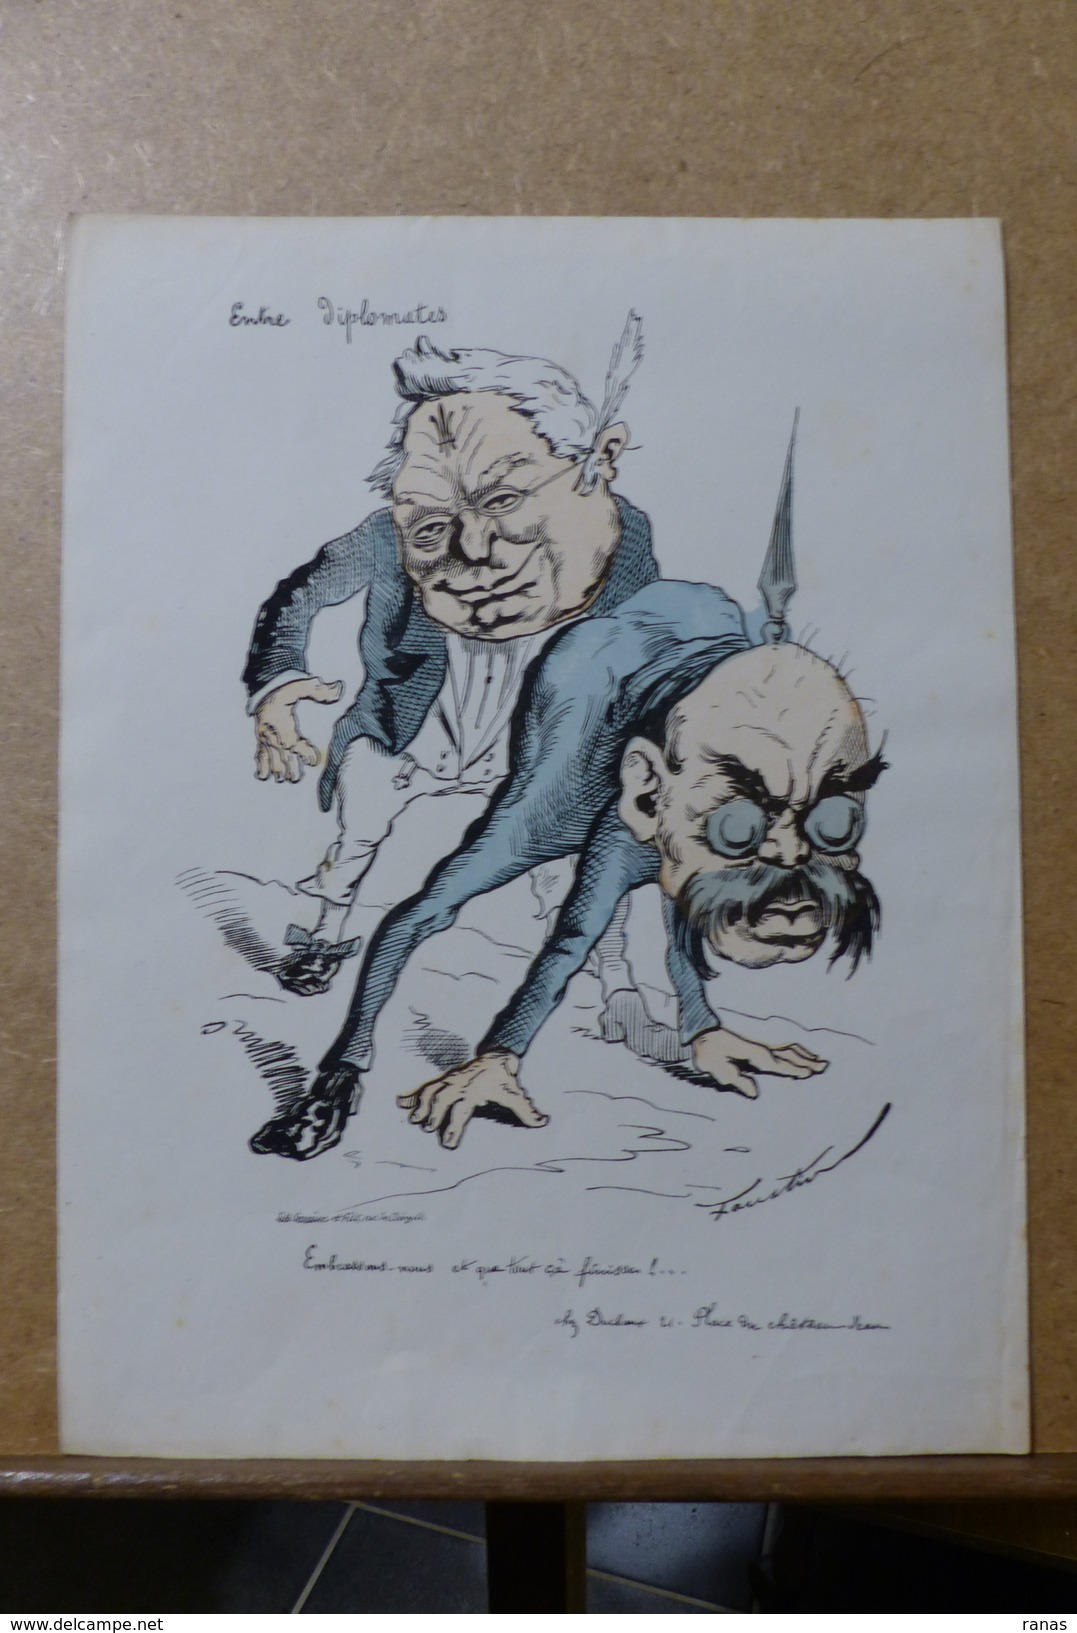 Estampe Gravure Satirique Caricature D'époque 1870  Bismarck Thiers Faustin 36 X 27,5 - Estampes & Gravures